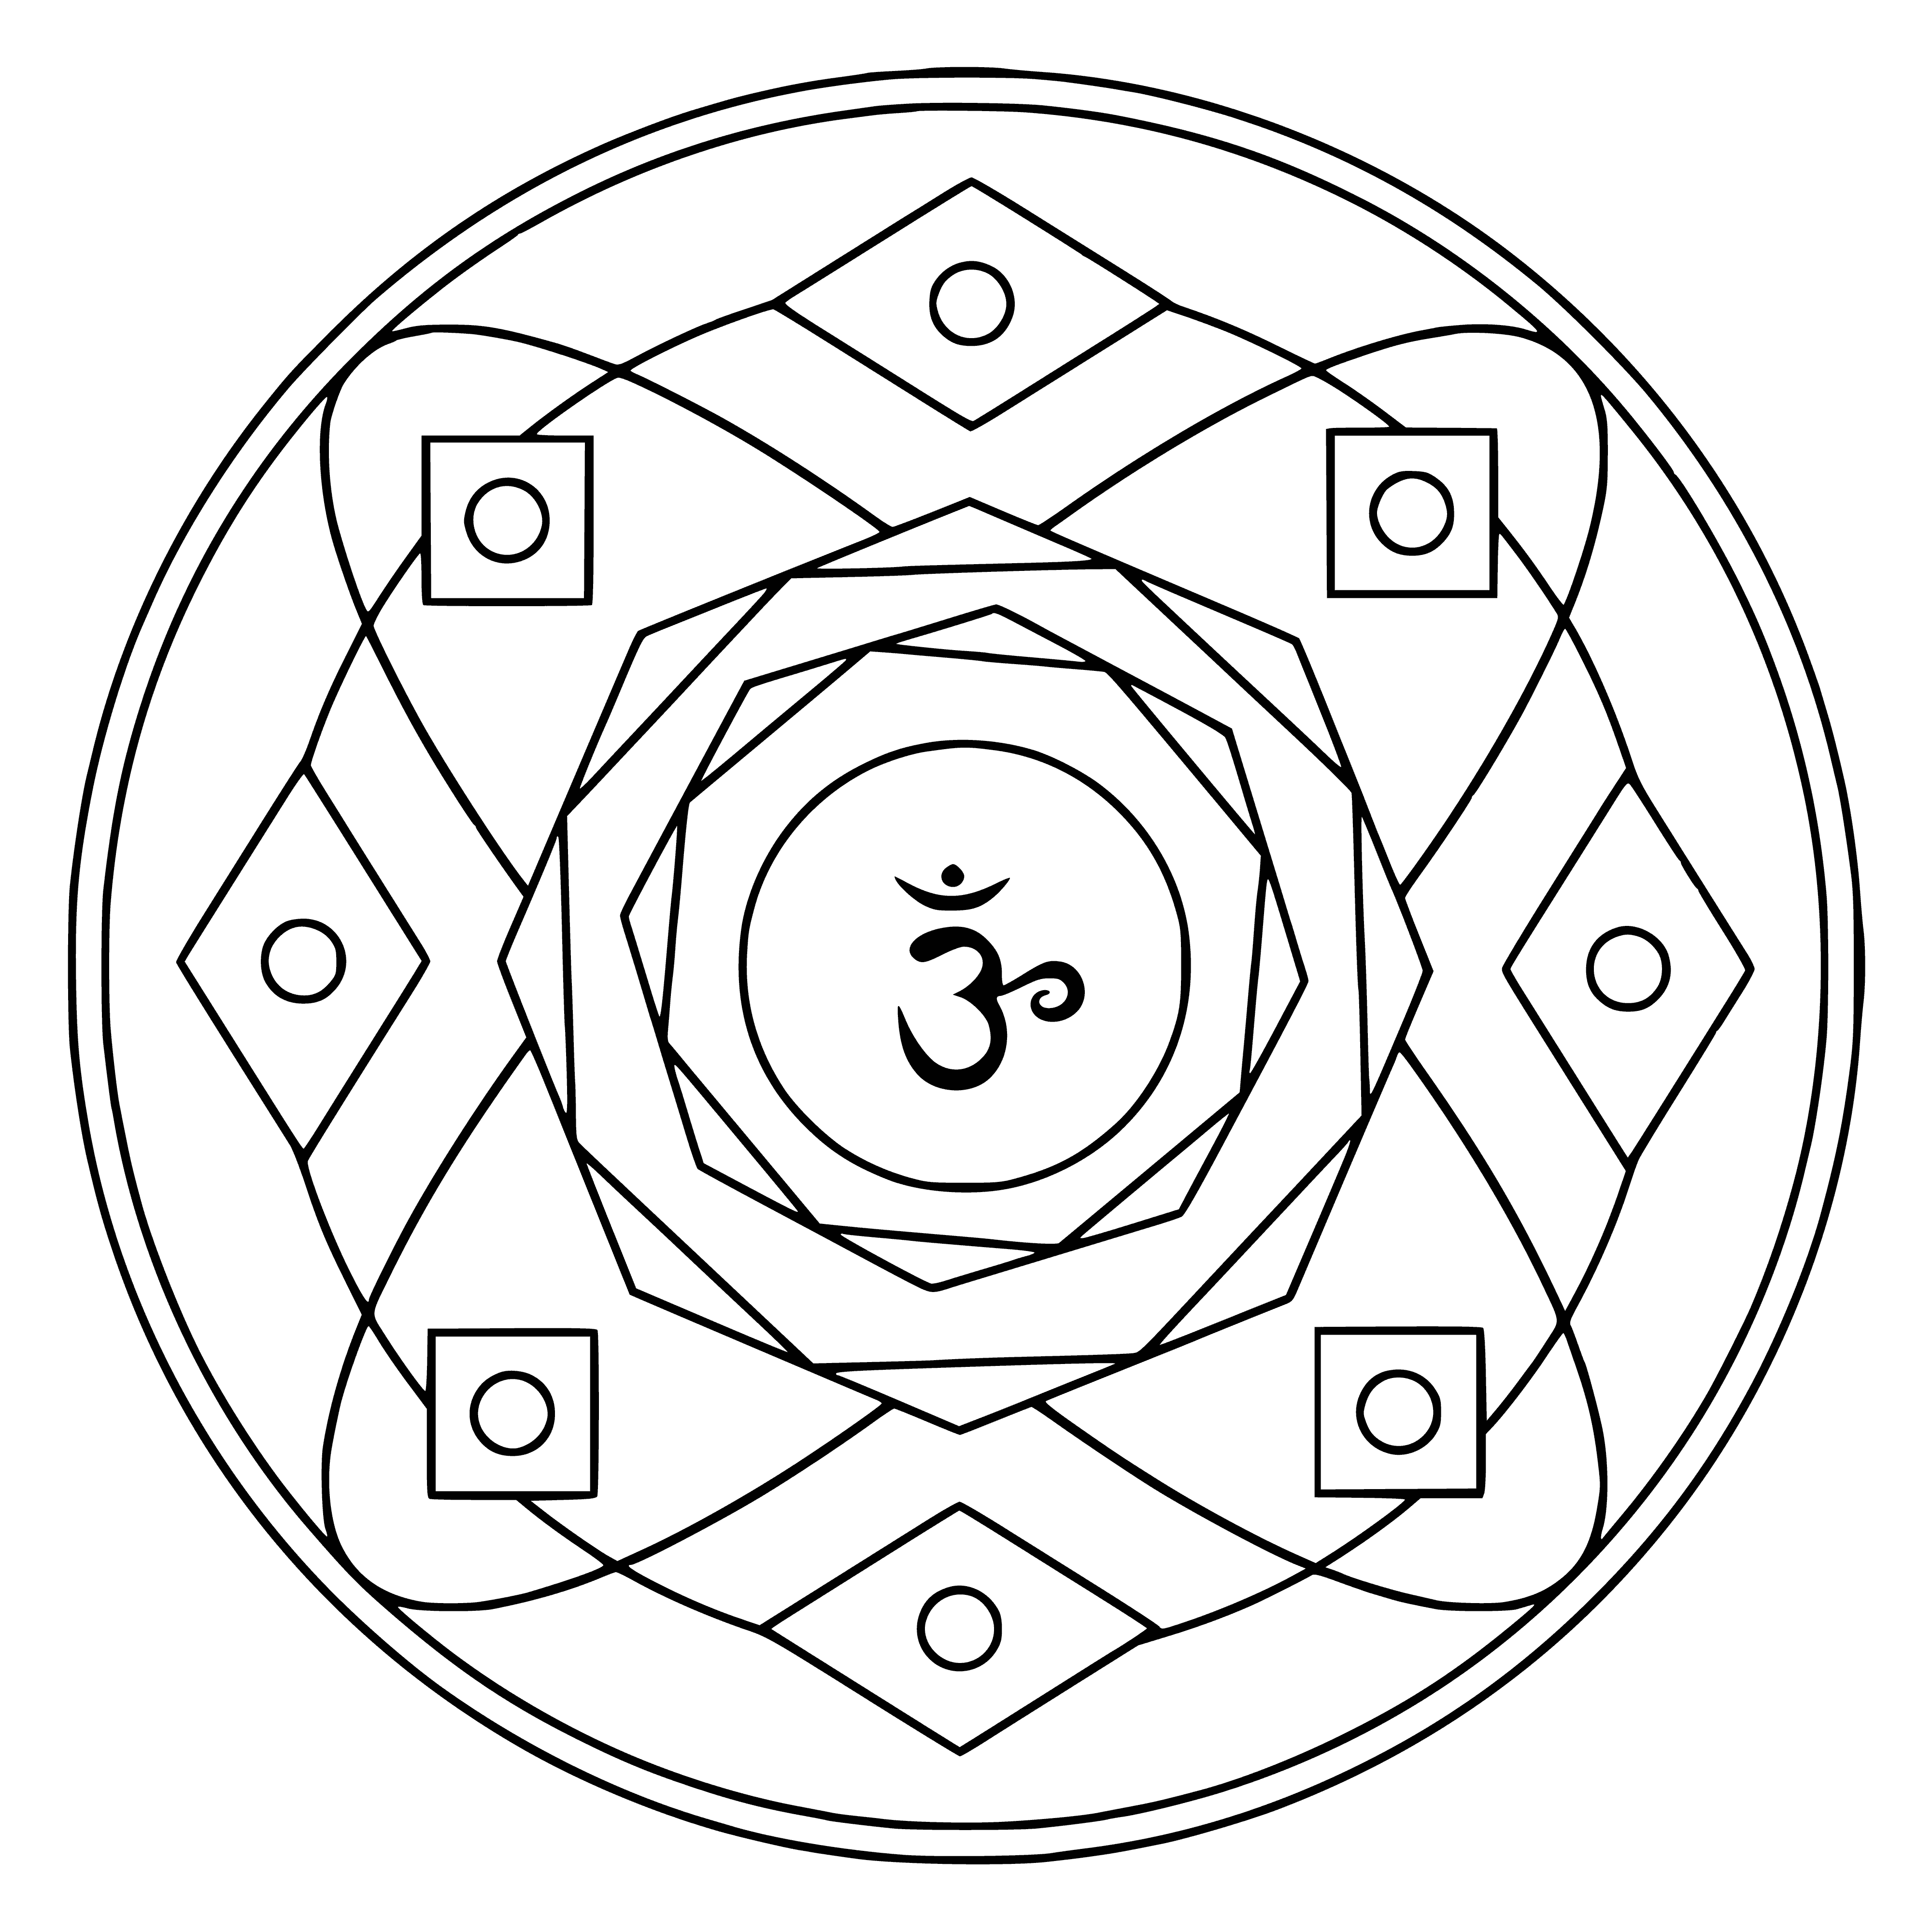 Mandala with the symbol of Sahasrara coloring page